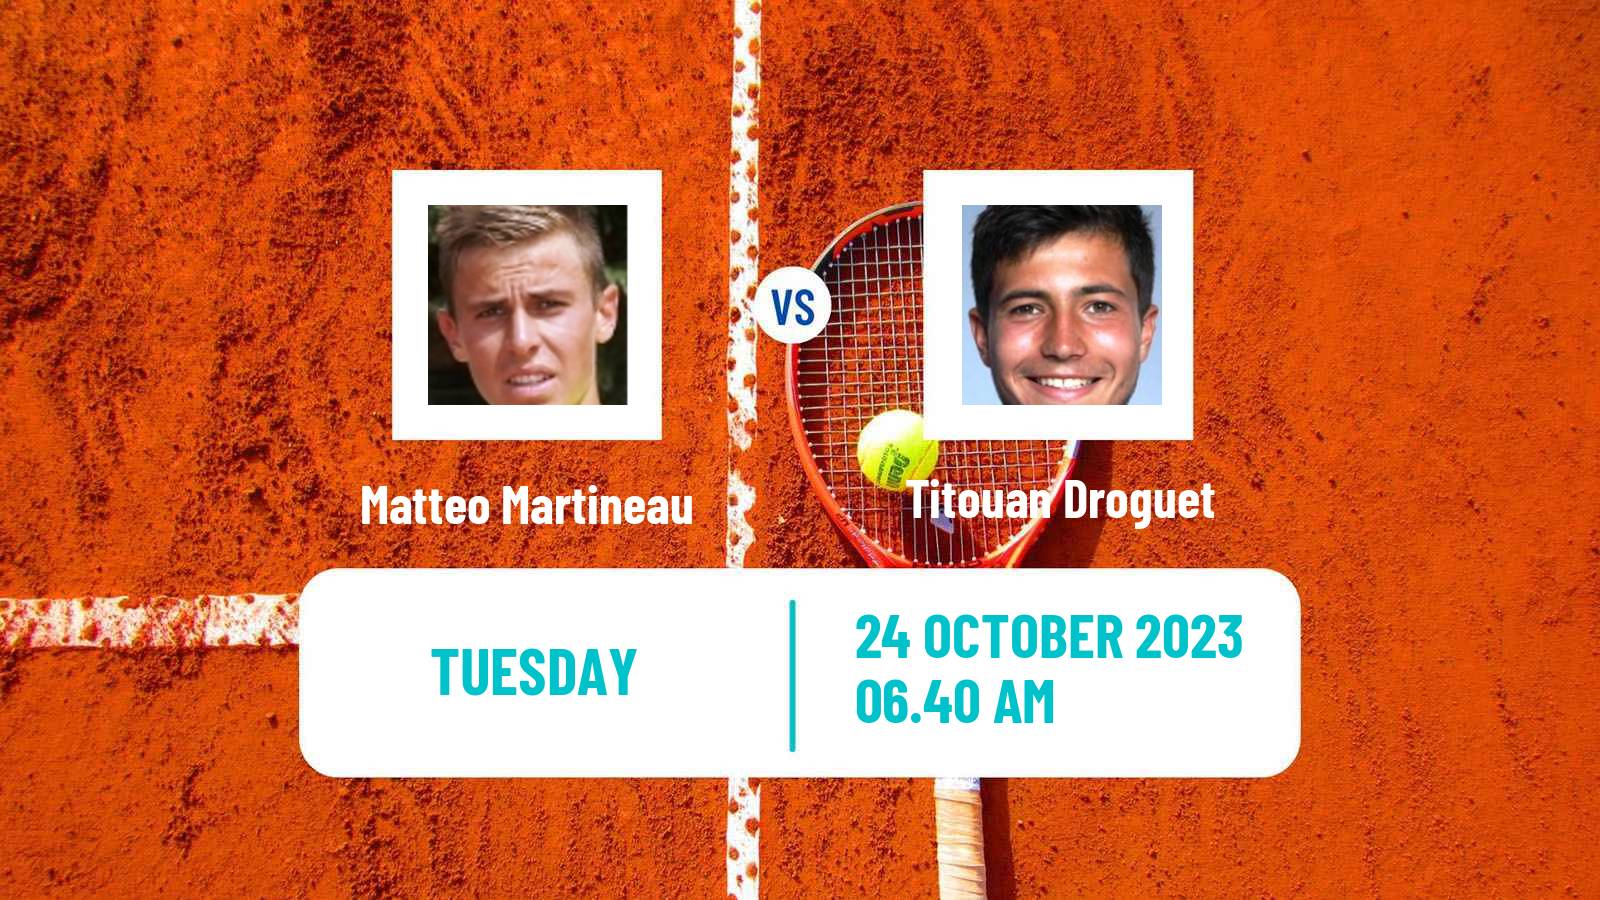 Tennis Brest Challenger Men Matteo Martineau - Titouan Droguet